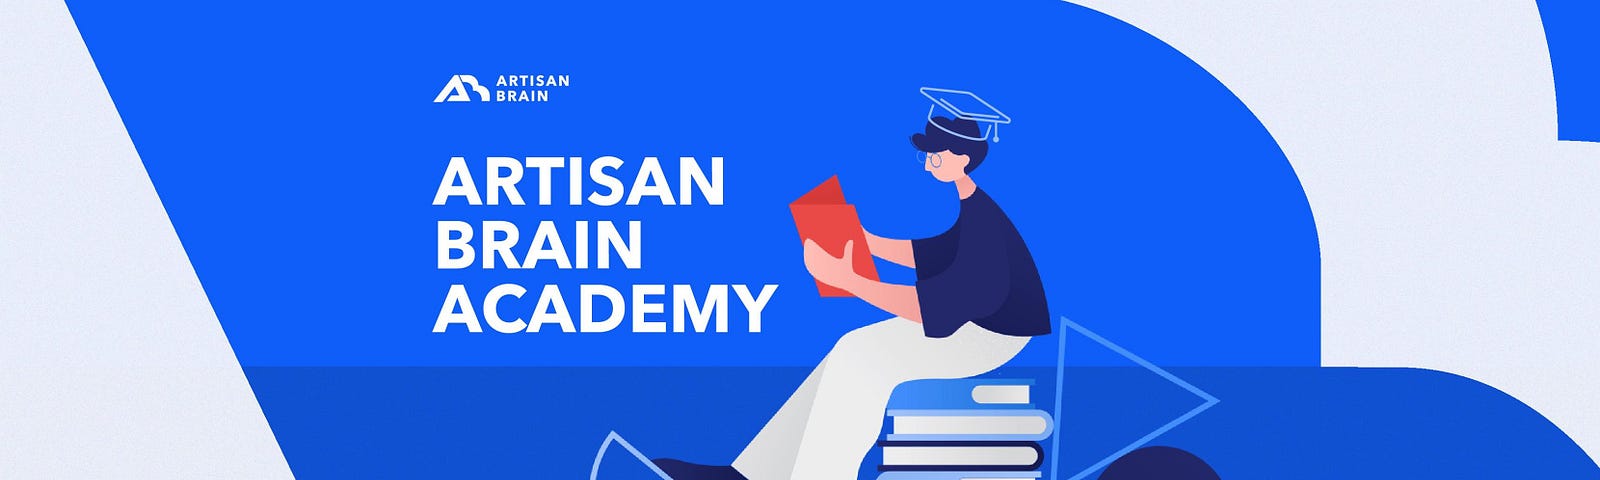 artisan brain academy cover